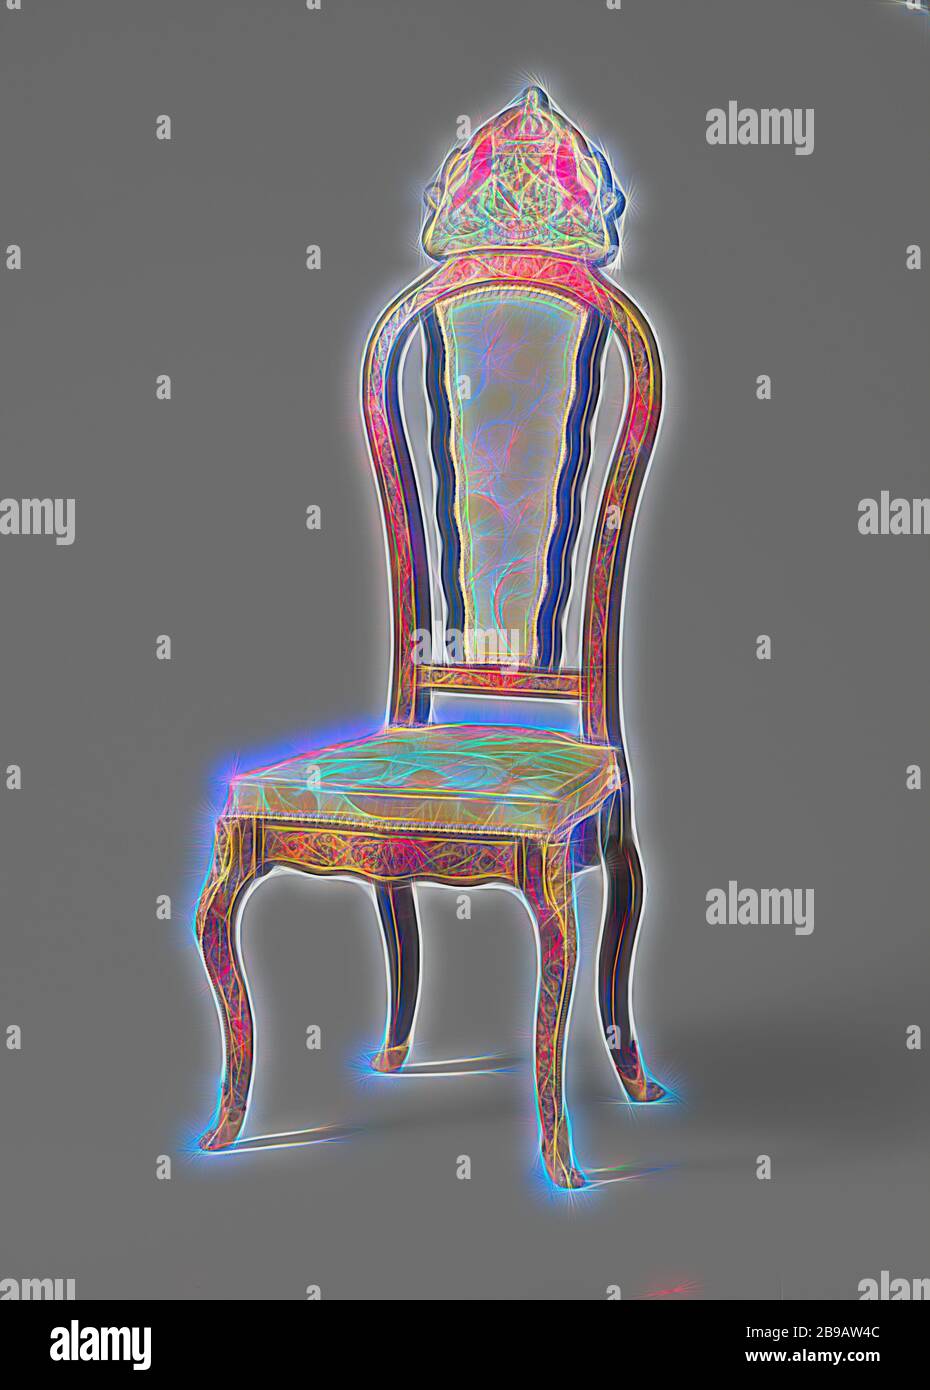 Chaise en placage ébène avec marqueterie Boulle, chaise avec marqueterie Boulle en placage ébène. Avec arme hollandaise sur le capot. Sur l'étiquette de chaise du Palais Noordeinde. Estampillé : Caillad., anonyme, France, 1800 - 1900, ébène (bois), laiton (alliage), bronze (métal), bois (matériel végétal), matières textiles, dorure, h 133.5 cm × l 51 cm × p 46 cm h 49 cm × l 44 cm × p 39 cm, réimaginé par Gibon, design chaleureux et joyeux, lumineux et radiance des rayons lumineux. L'art classique réinventé avec une touche moderne. Photographie inspirée par le futurisme, embrassant l'énergie dynamique de la technologie moderne, movemen Banque D'Images